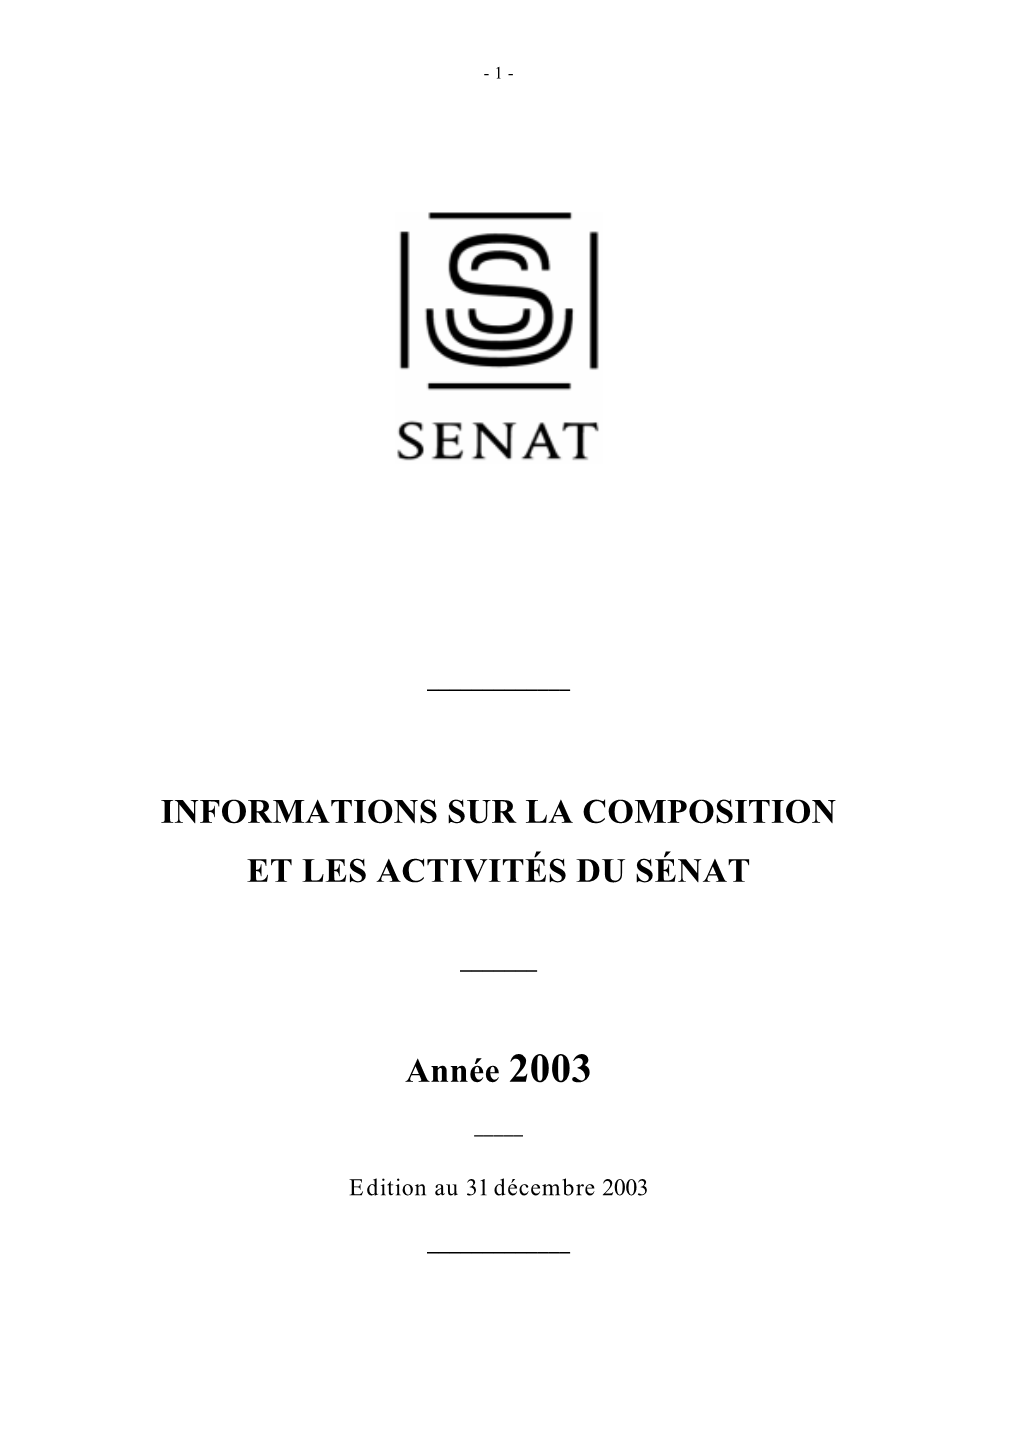 INFORMATIONS SUR LA COMPOSITION ET LES ACTIVITÉS DU SÉNAT Année 2003